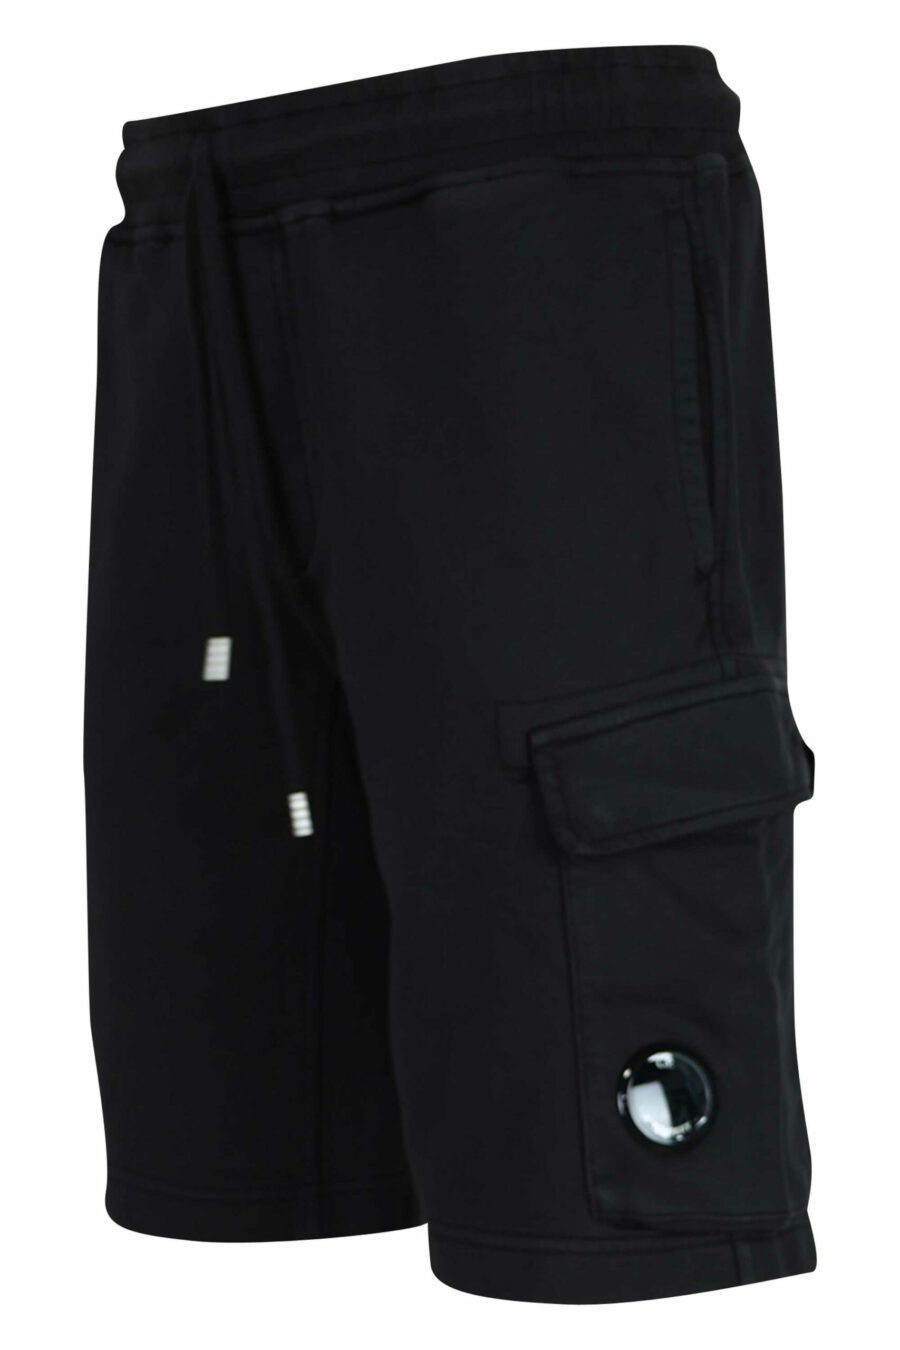 Pantalón de chándal corto negro estilo cargo con logo lente - 7620943730982 1 scaled